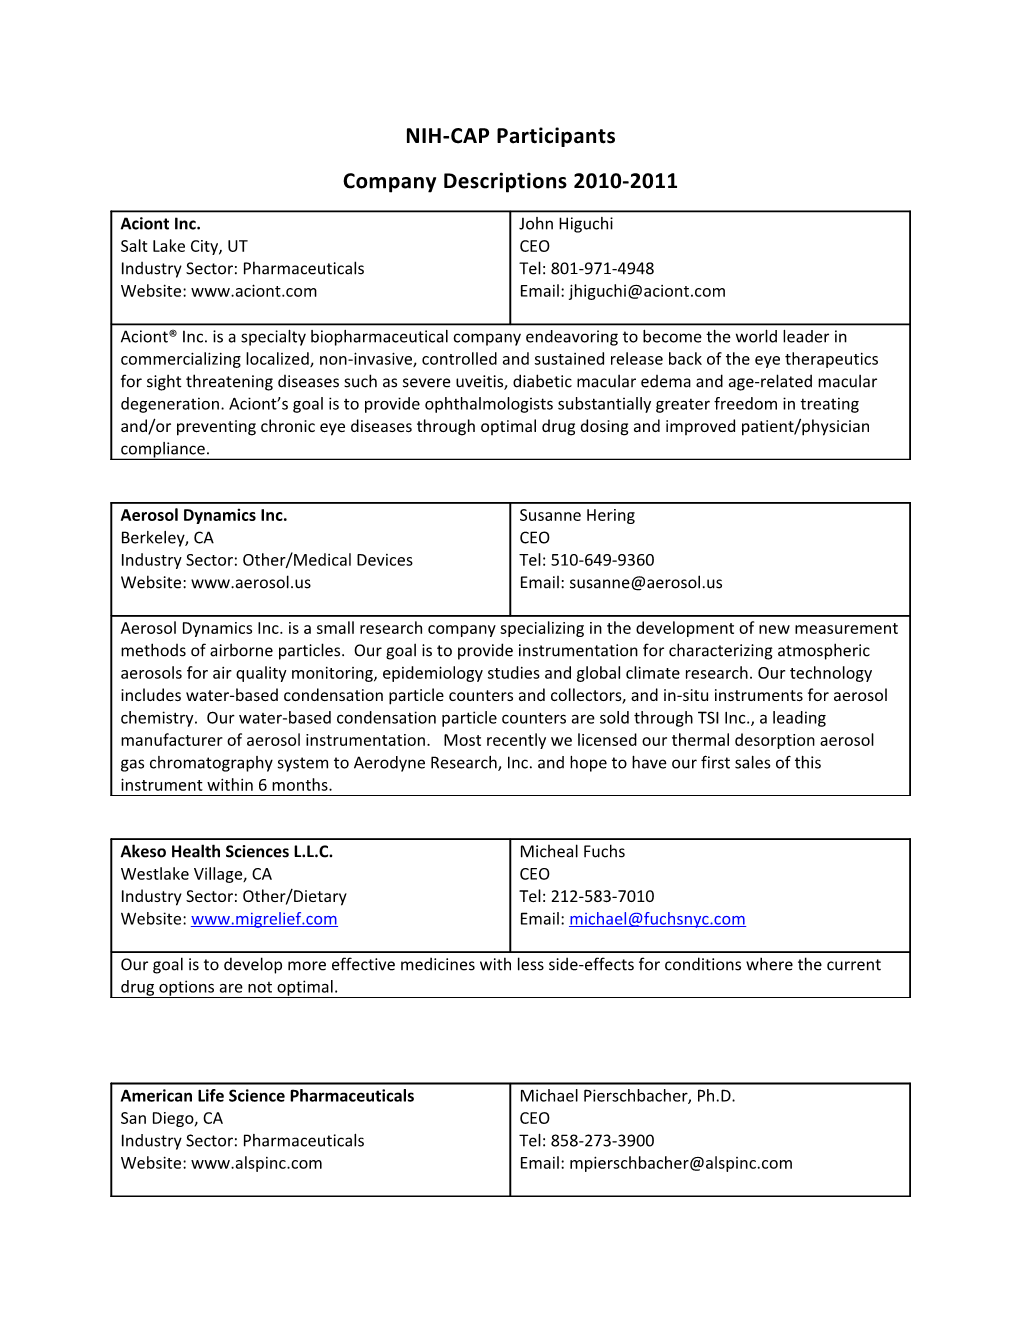 NIH-CAP Participants - Company Descriptions 2010-2011 - December 16, 2010